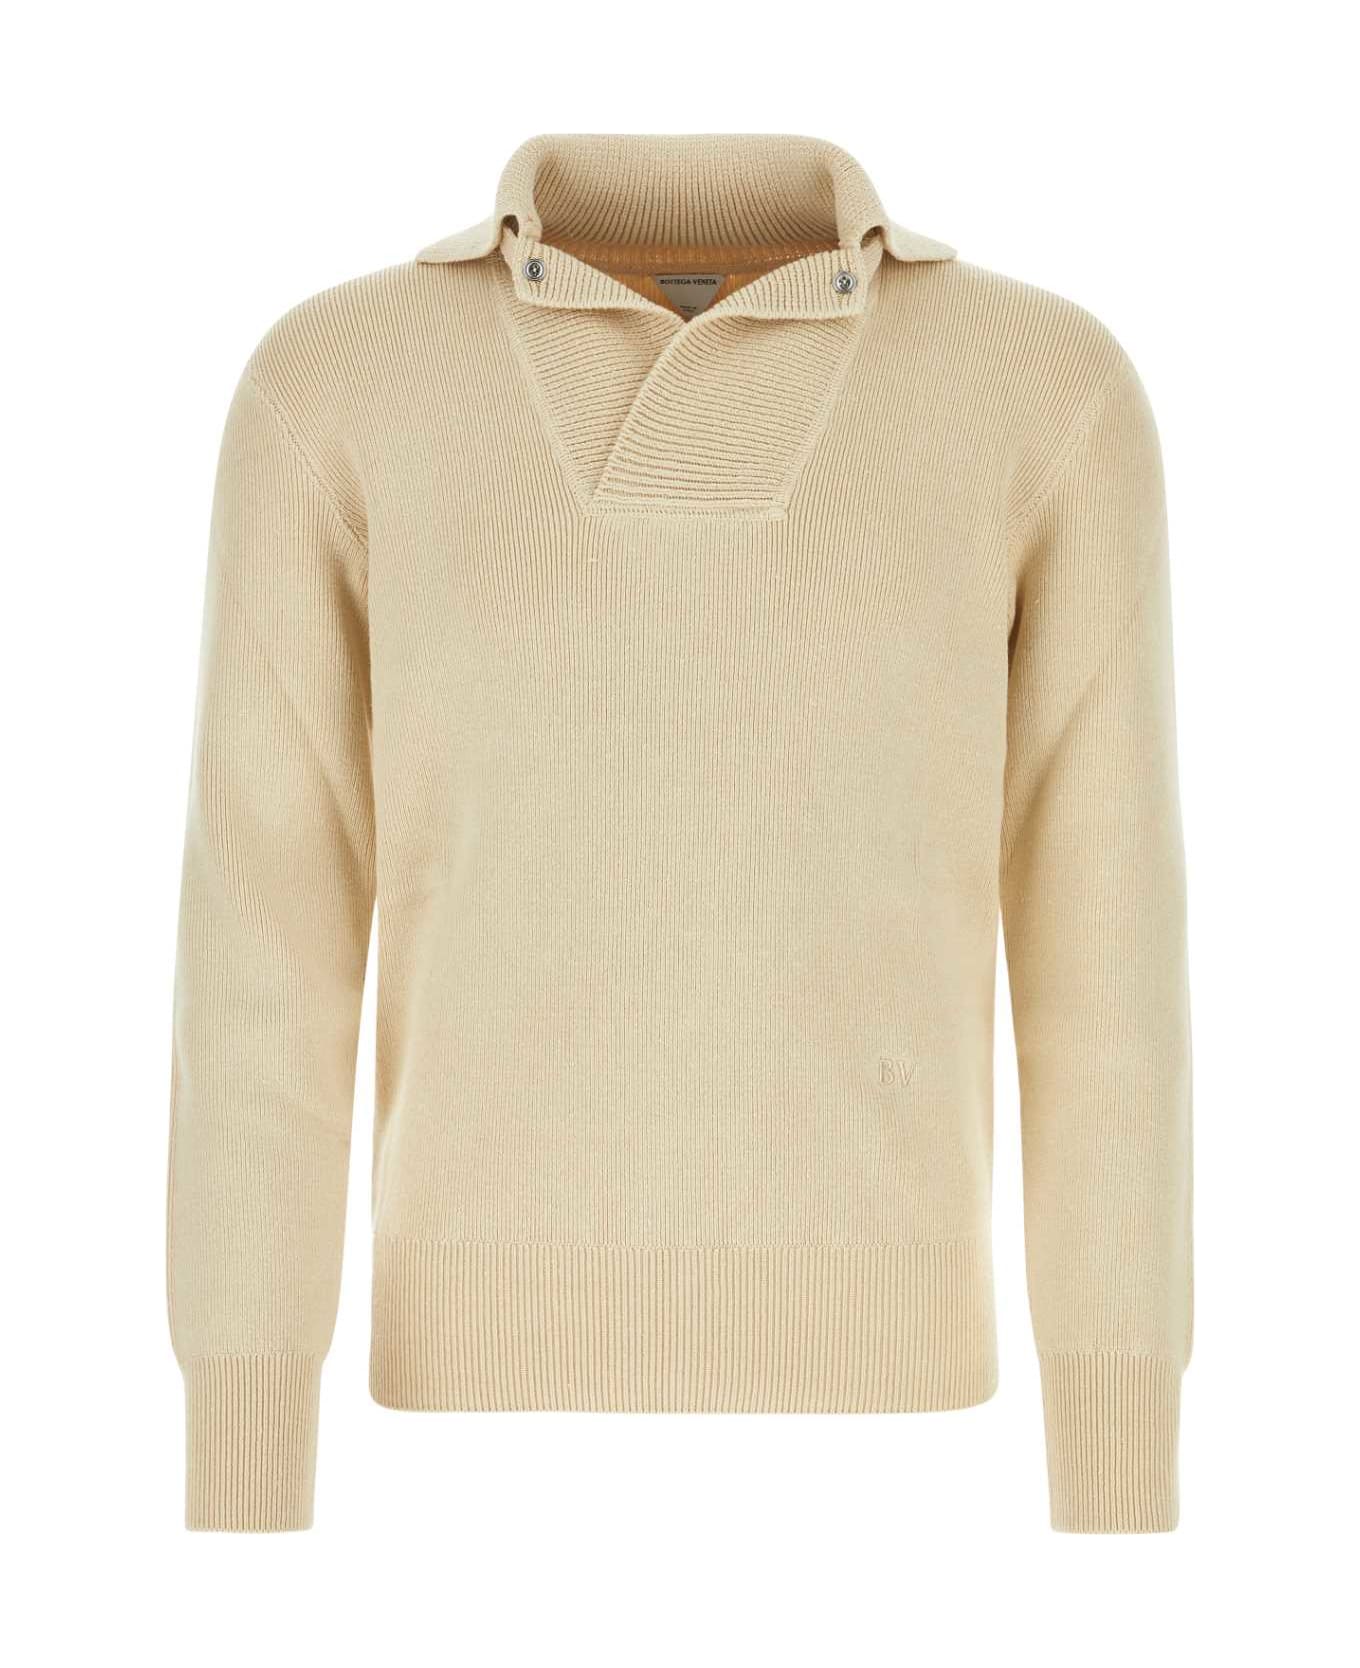 Bottega Veneta Beige Linen Blend Sweater - BEIGE